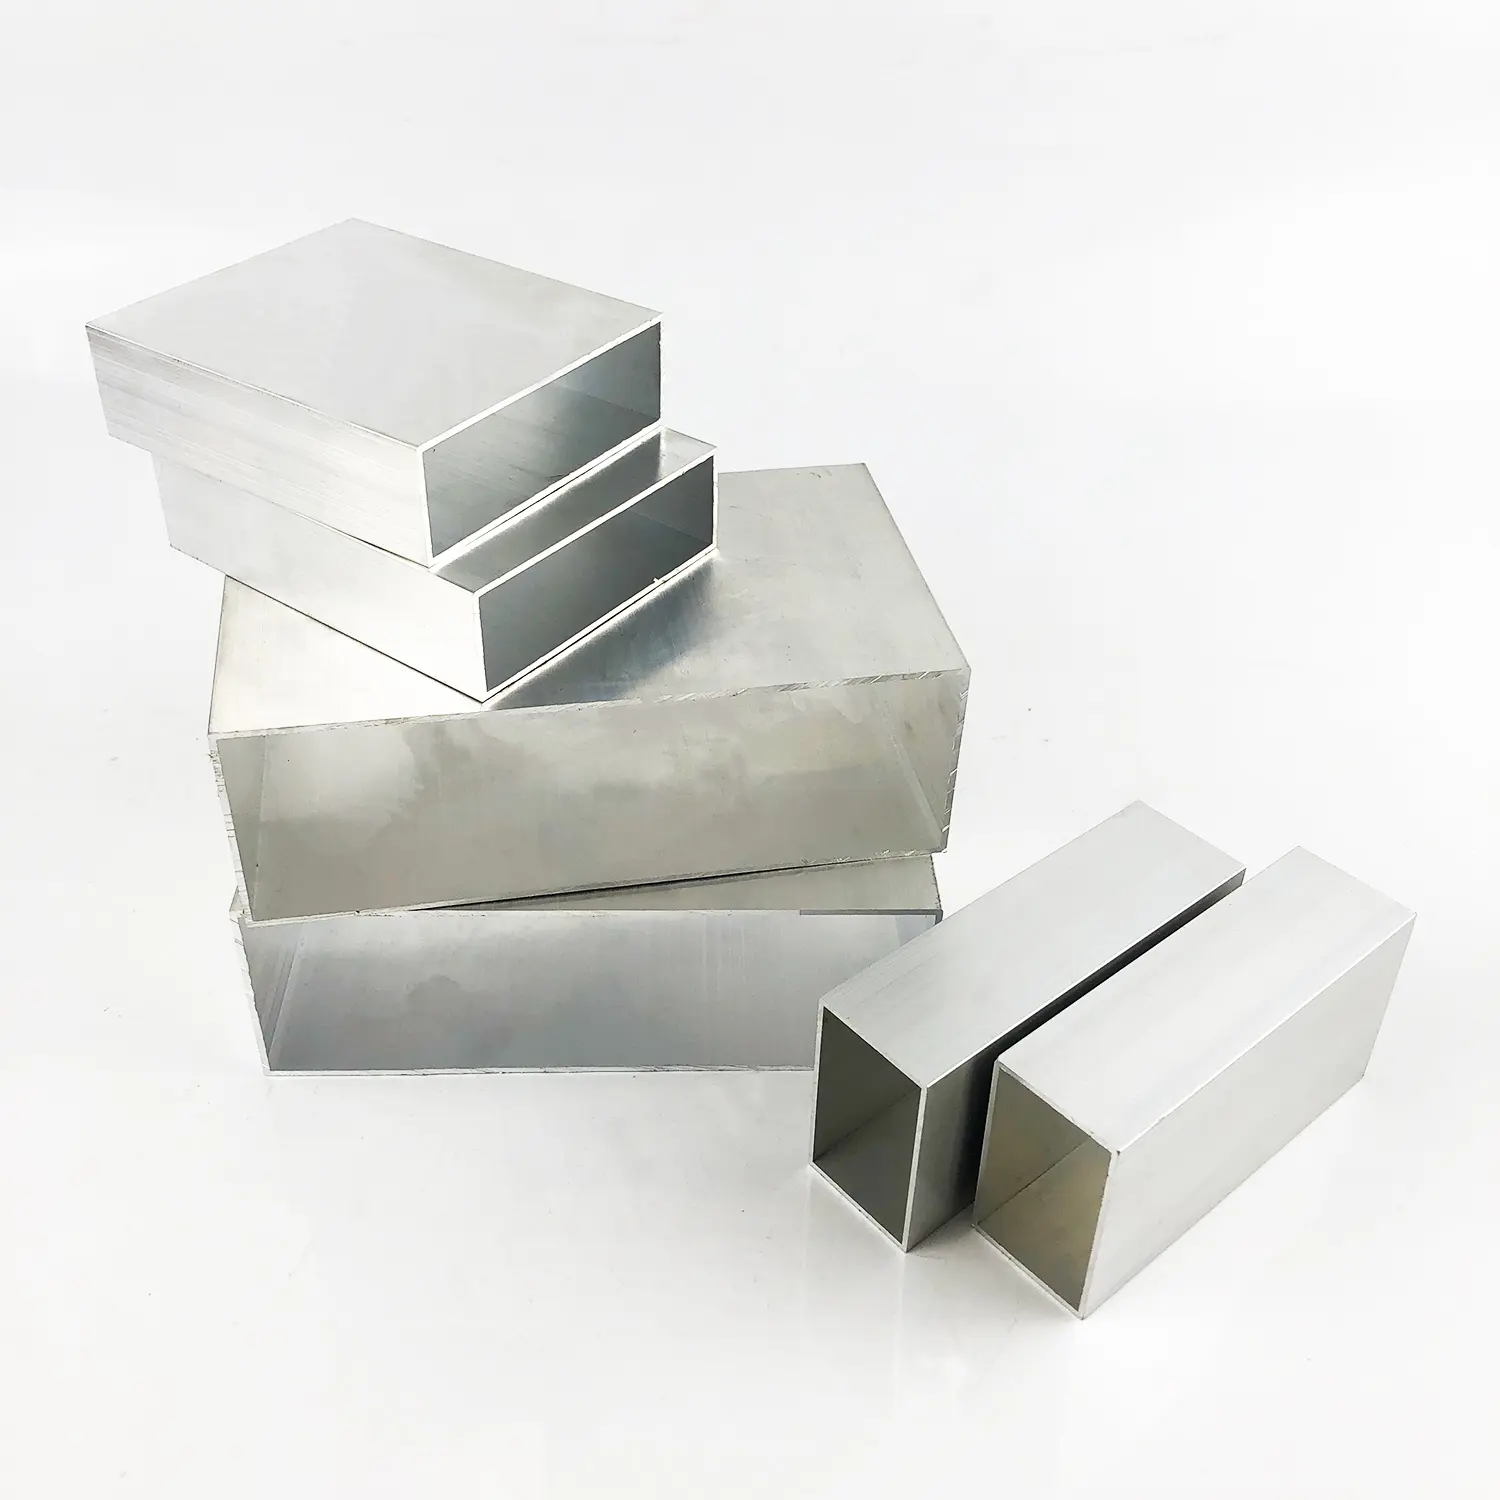 Caixa de alumínio para fábrica de equipamentos de liga de alumínio, equipamento de fábrica para processamento de solda e corte em forma de T, equipamento de proteção contra poeira